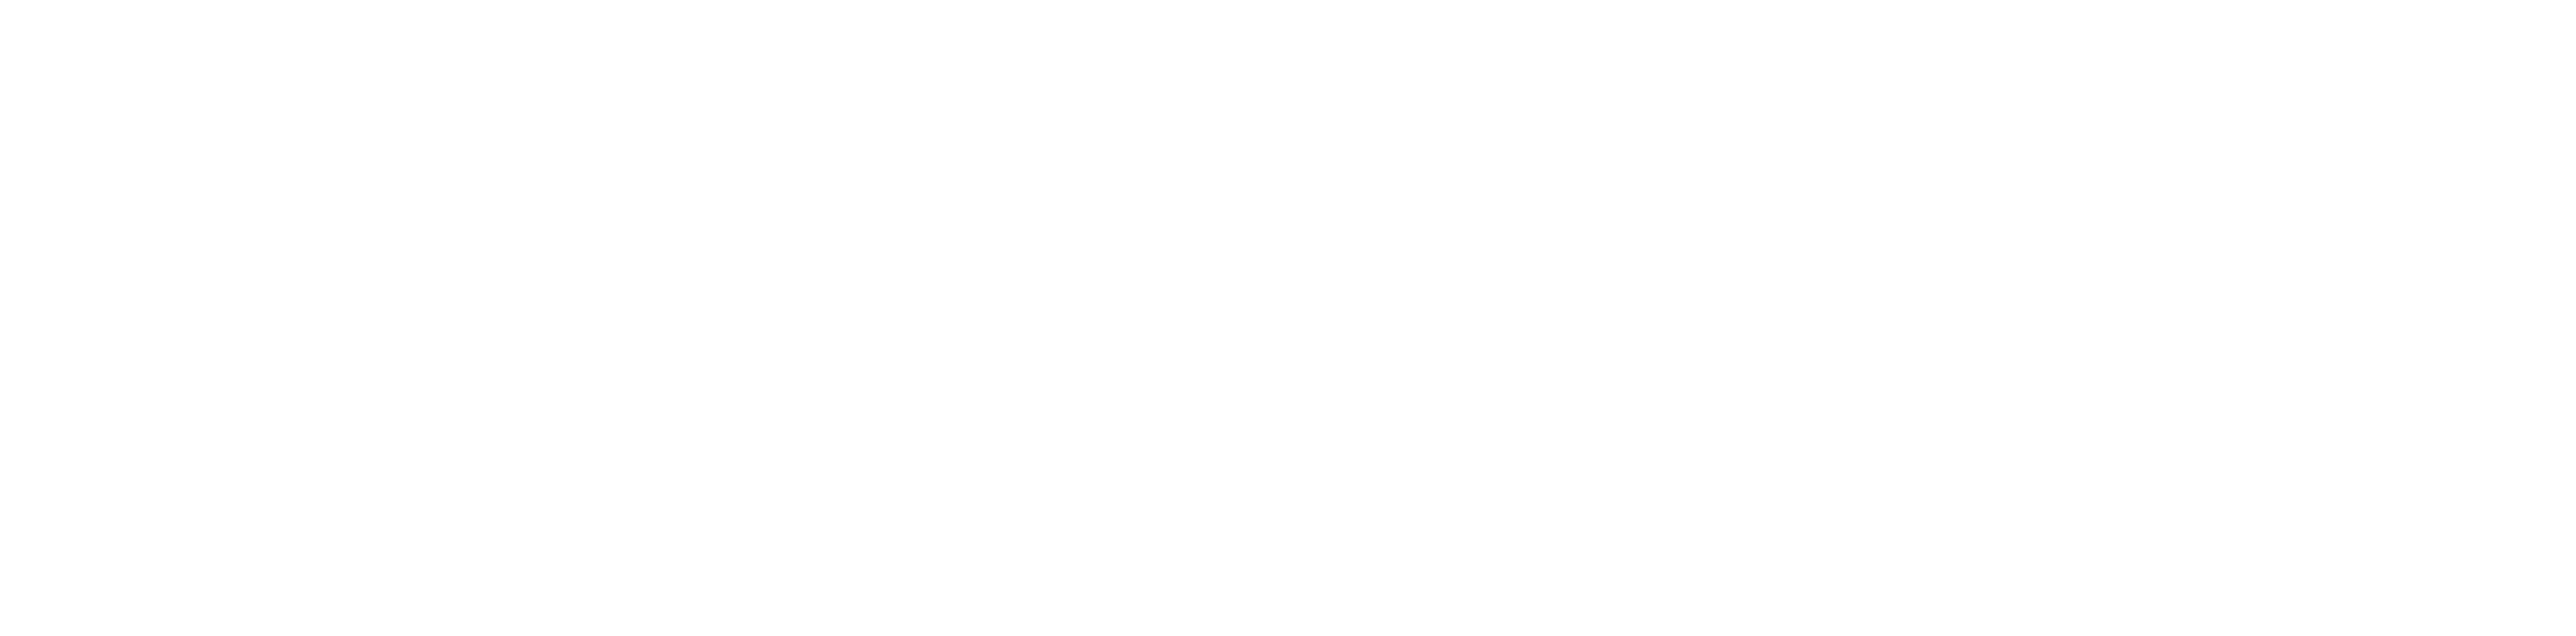 Dental Udding Bergen